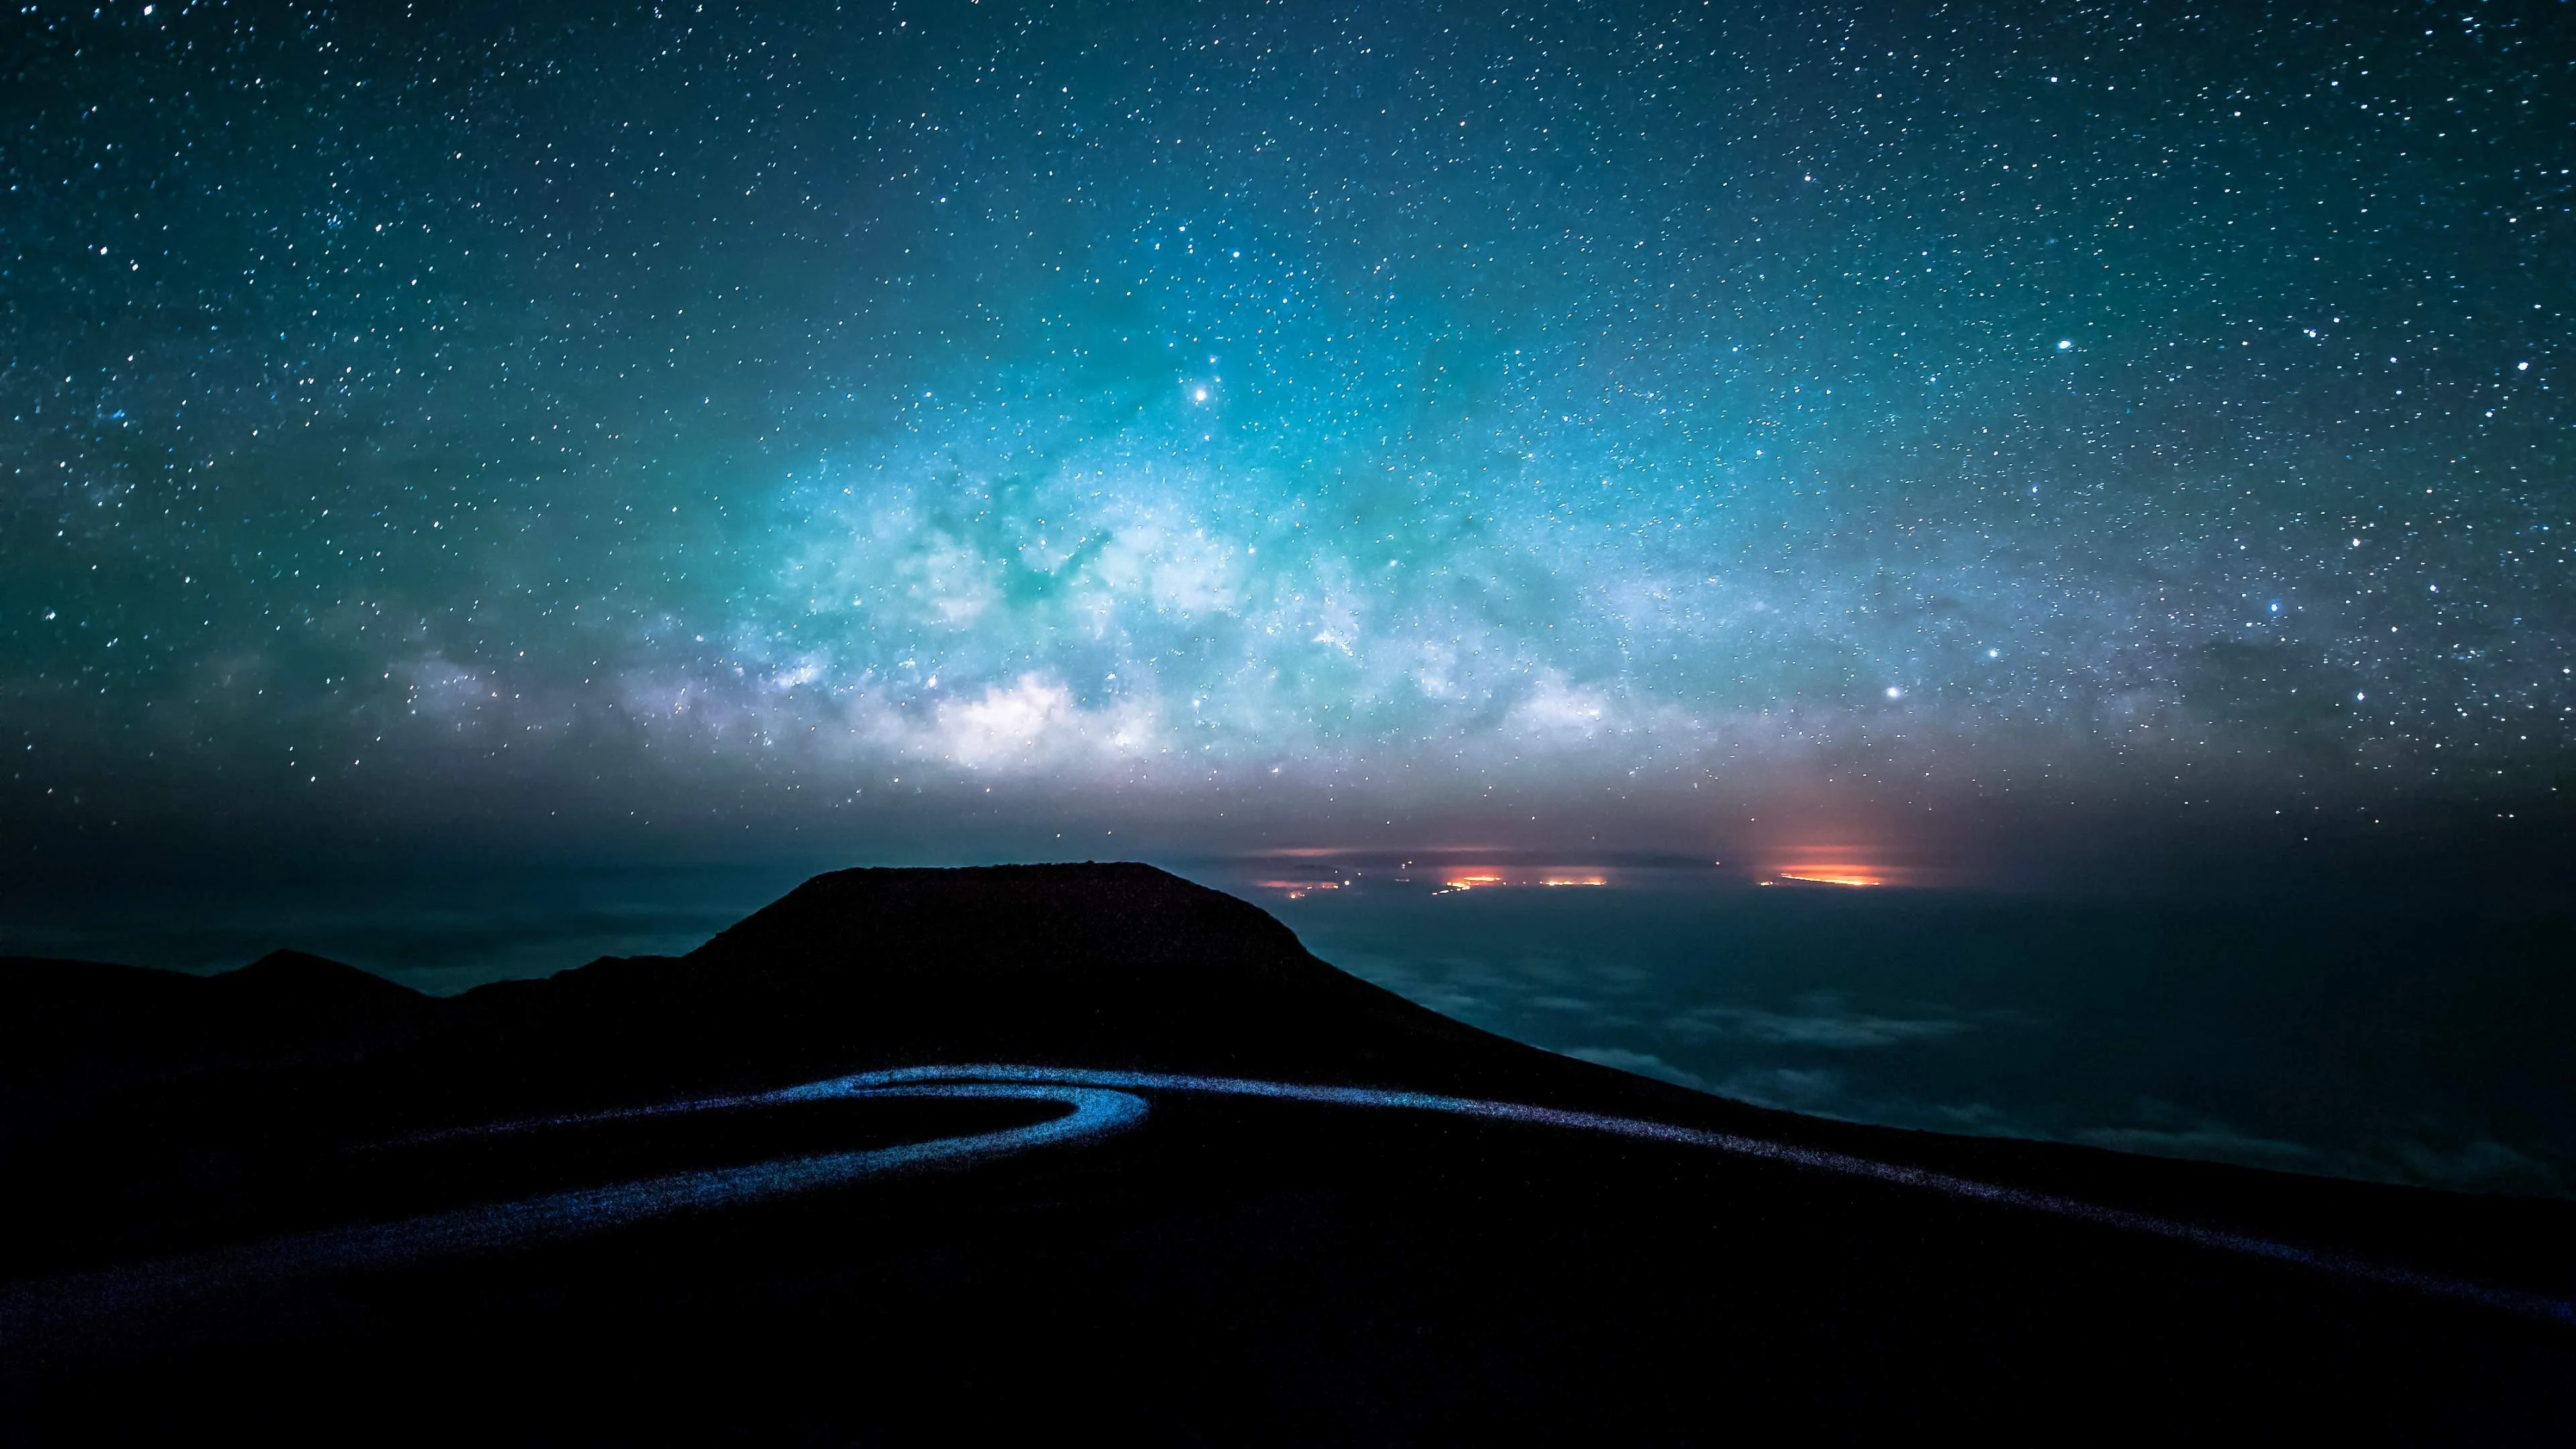 Sử dụng chế độ 4K để ngắm nhìn bầu trời đêm rực rỡ đến mê hoặc. Chất lượng hình ảnh cao cấp, sẽ đem đến cho bạn cảm giác như đang thực sự đắm chìm trong không gian bao la, cảm nhận sự hiện diện của những vì sao và các thiên thể quang dương. Hãy cùng khám phá khoảng trời không thể tuyệt đẹp hơn qua hình ảnh 4K night sky.